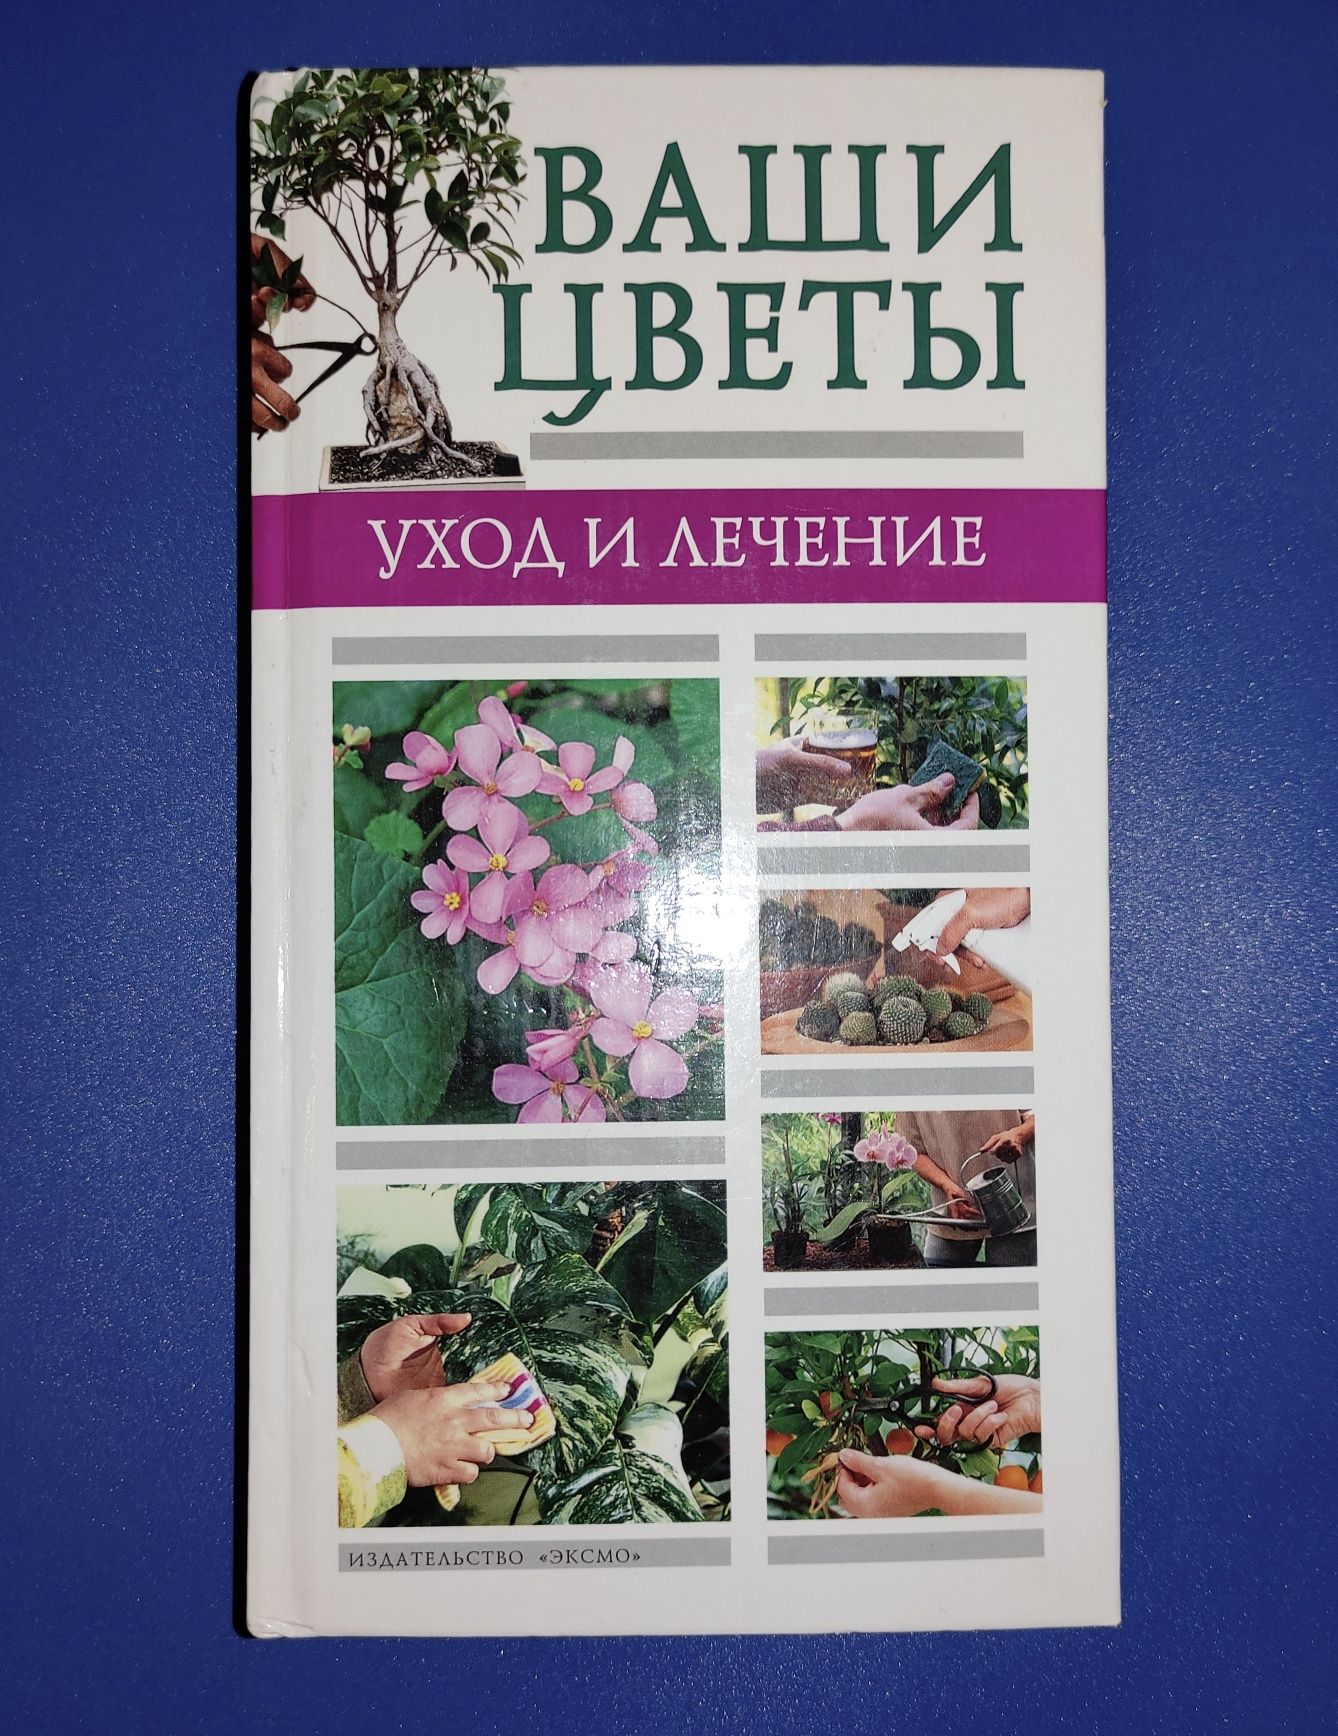 Книга Ваши комнатные цветы. Уход и лечение Татьяна Палеева 2004 Идеал